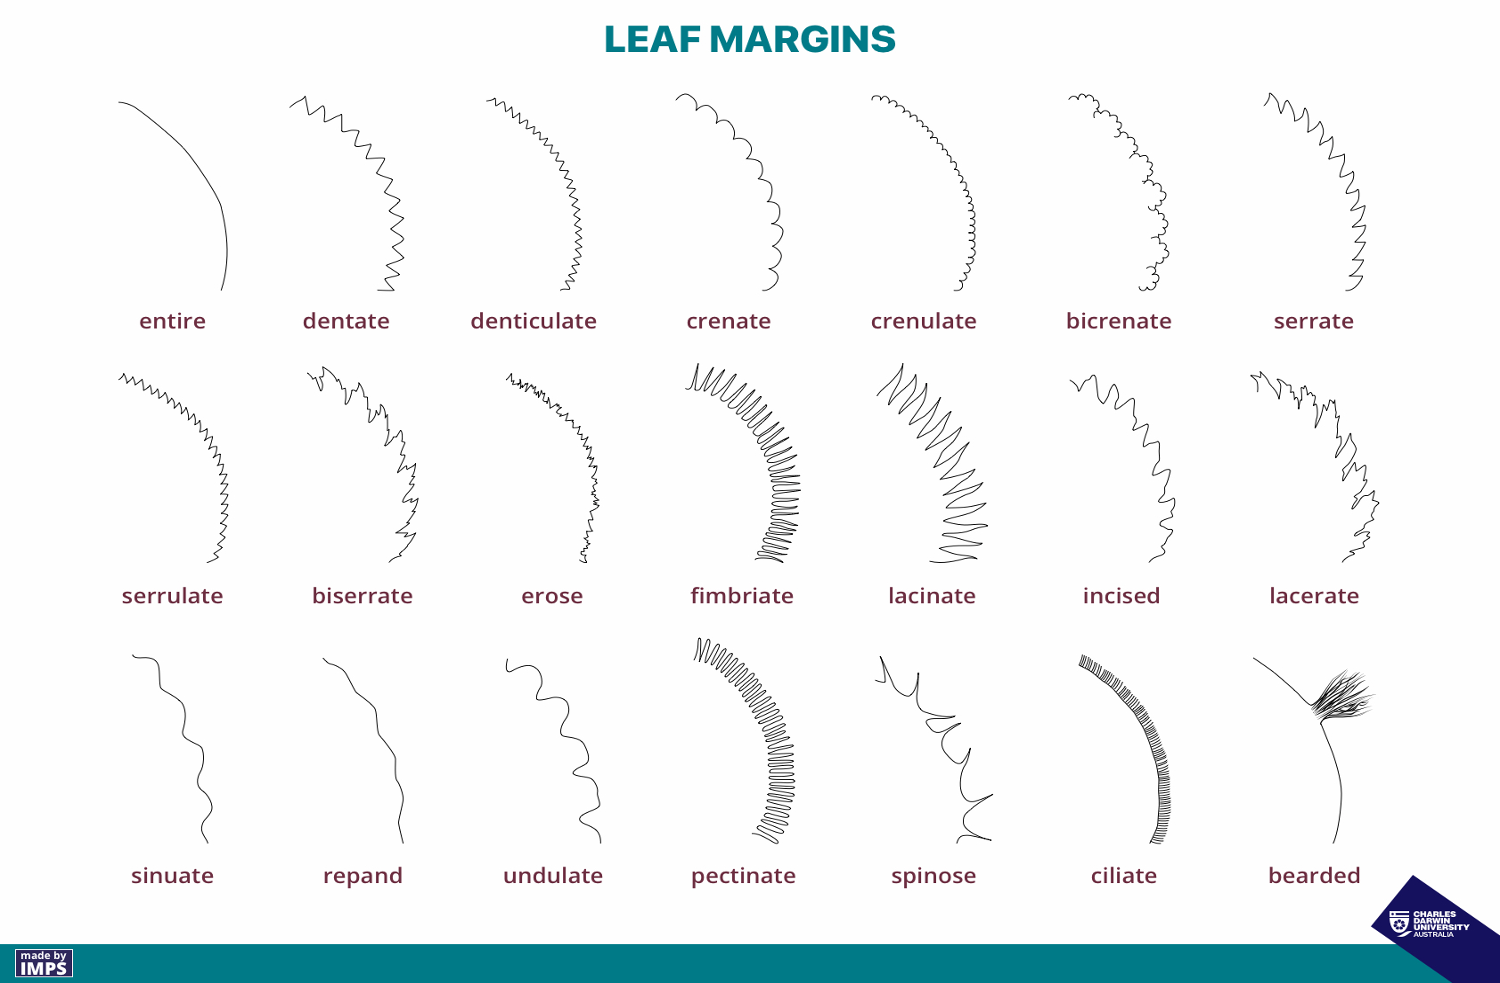 Drawing of various leaf margins